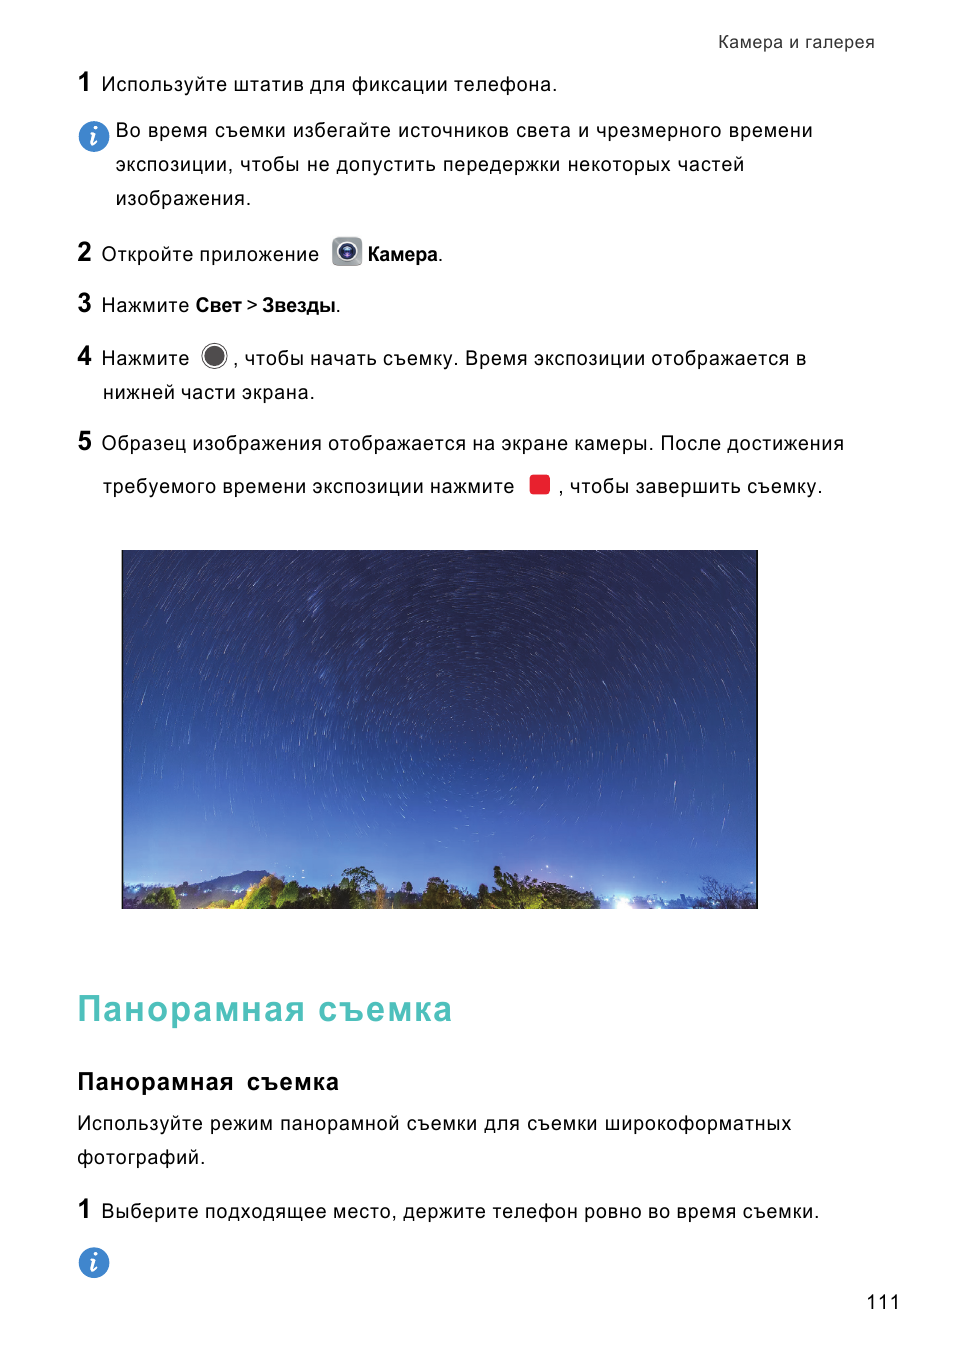 Панорамная съемка, Панорамная, Съемка | Инструкция по эксплуатации Huawei Mate 8 | Страница 118 / 210